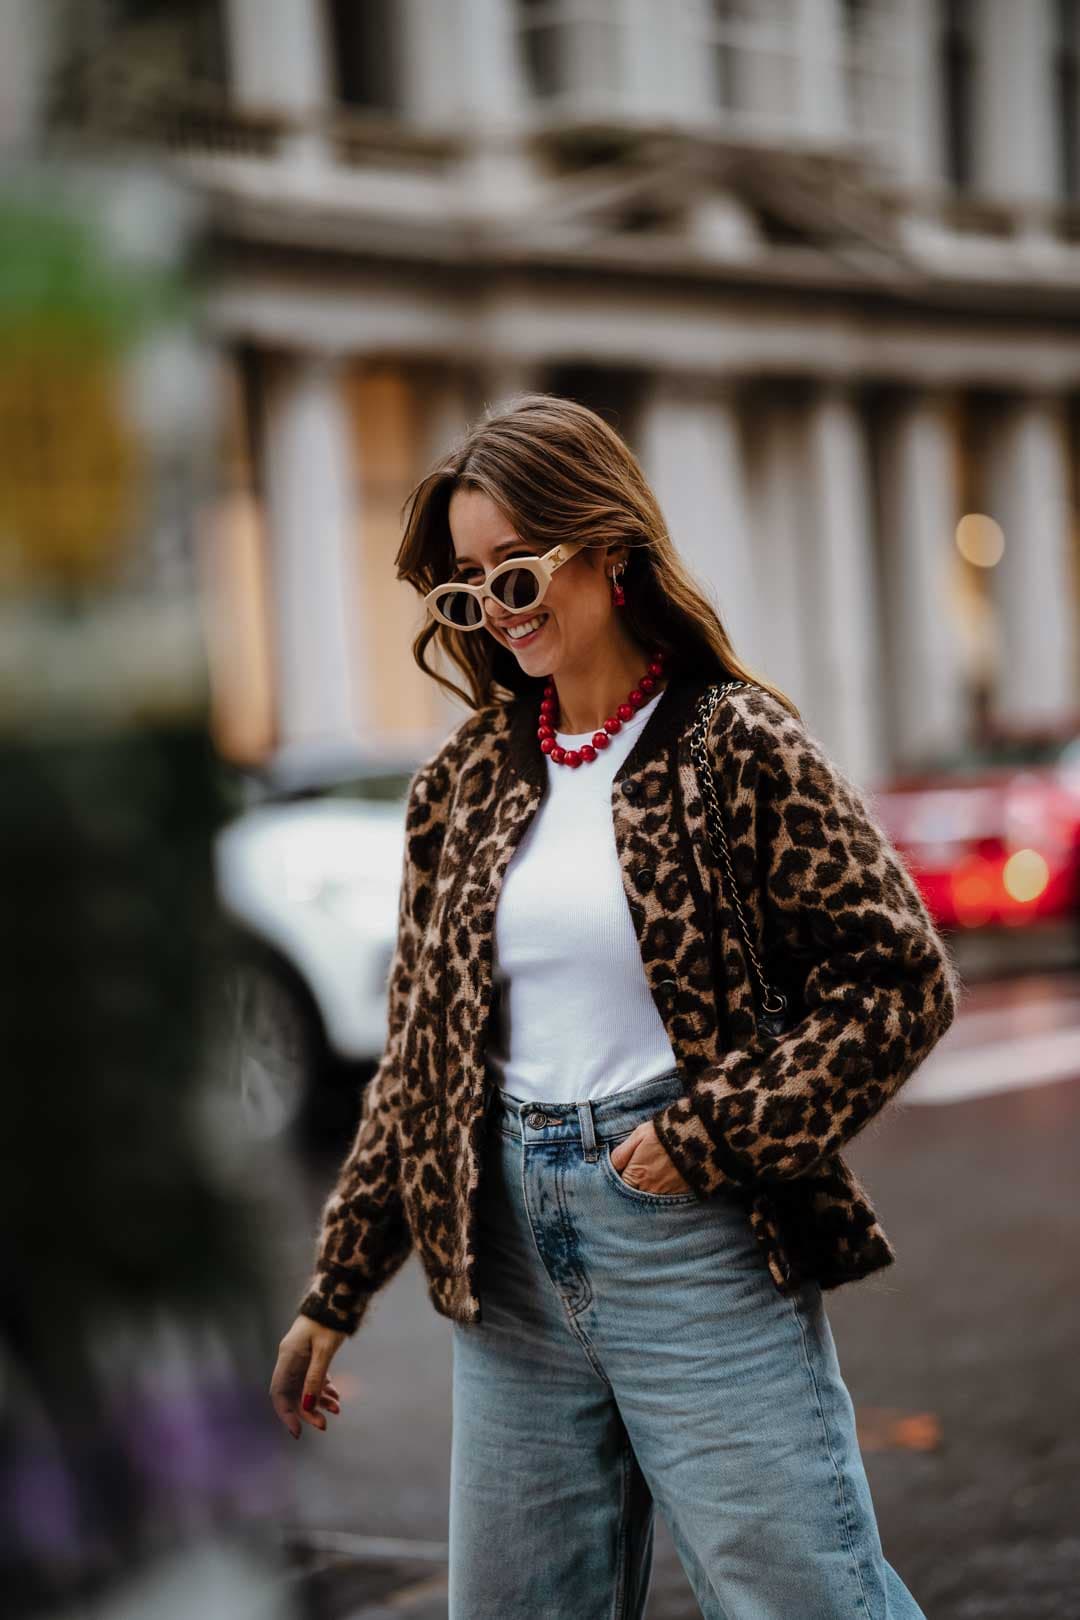 Une femme marche dans la rue avec un gilet léopard, un debardeur blanc, un jeans et des lunettes de soleil